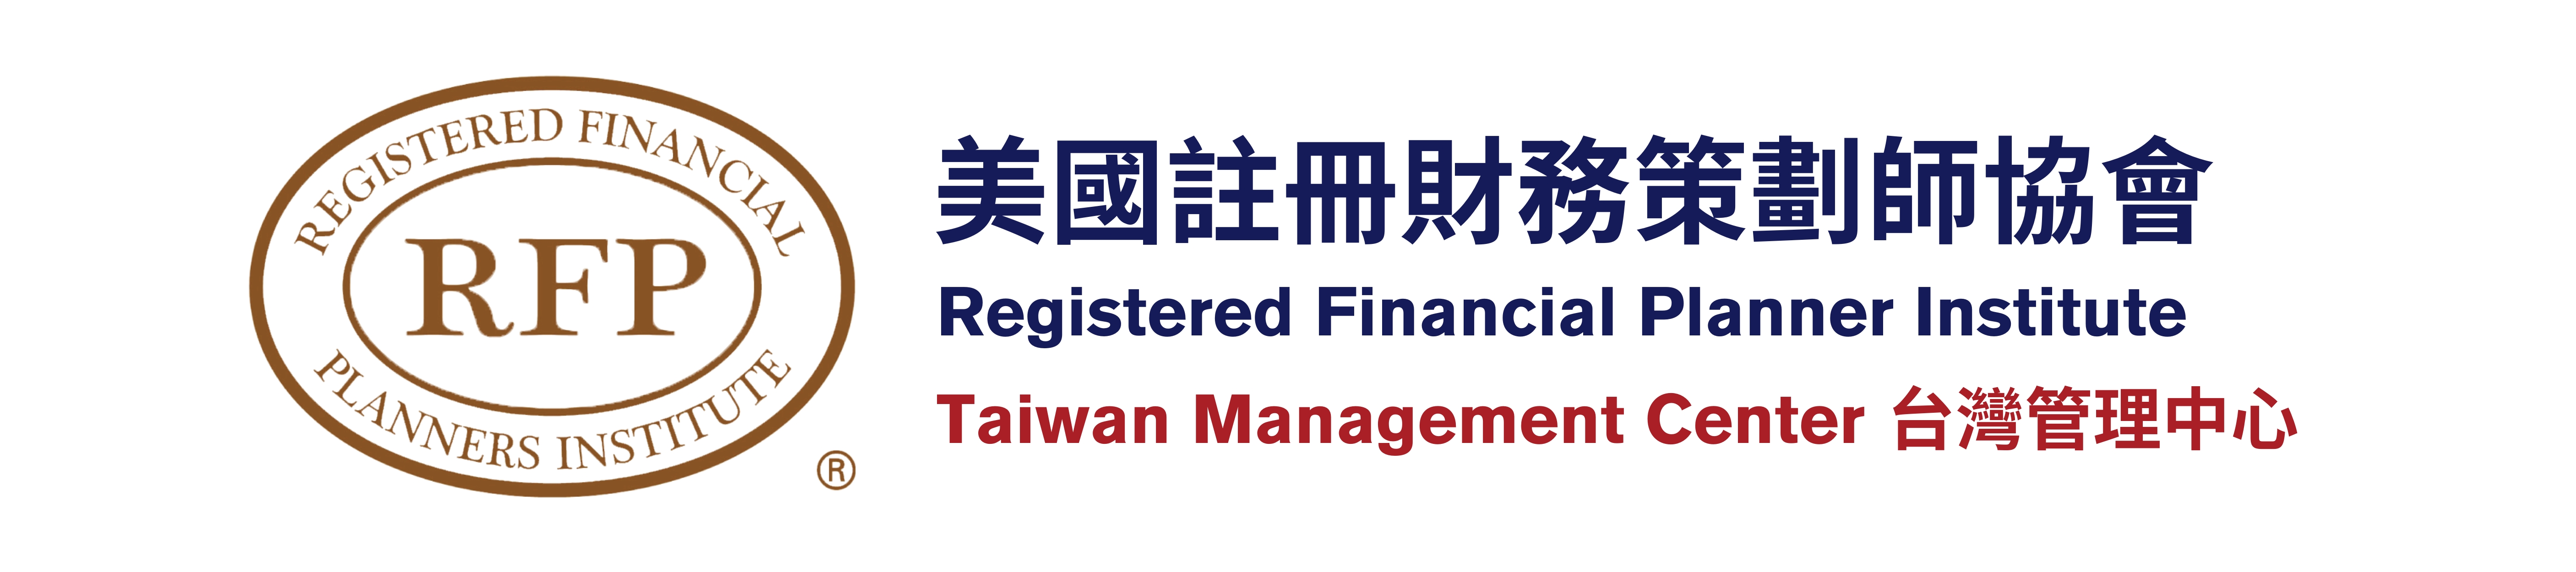 TRFP台灣註冊財務策劃師協會